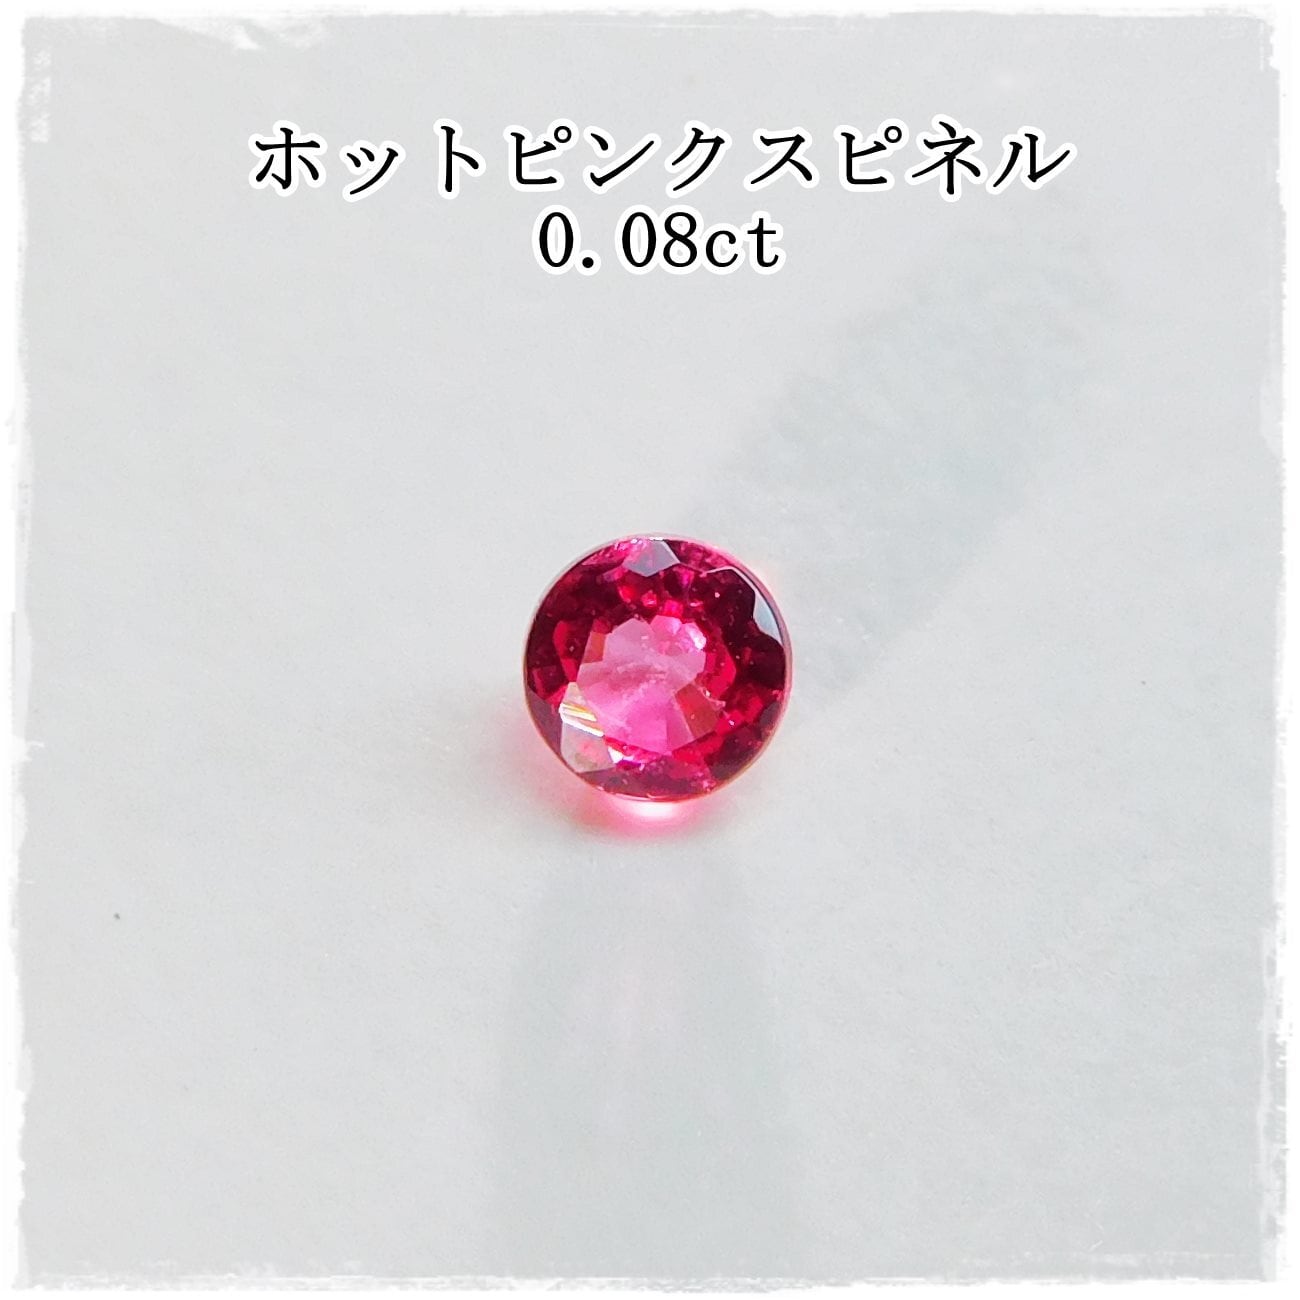 ホットピンクスピネルRD 0.08ct | ganpanda☆彡stone